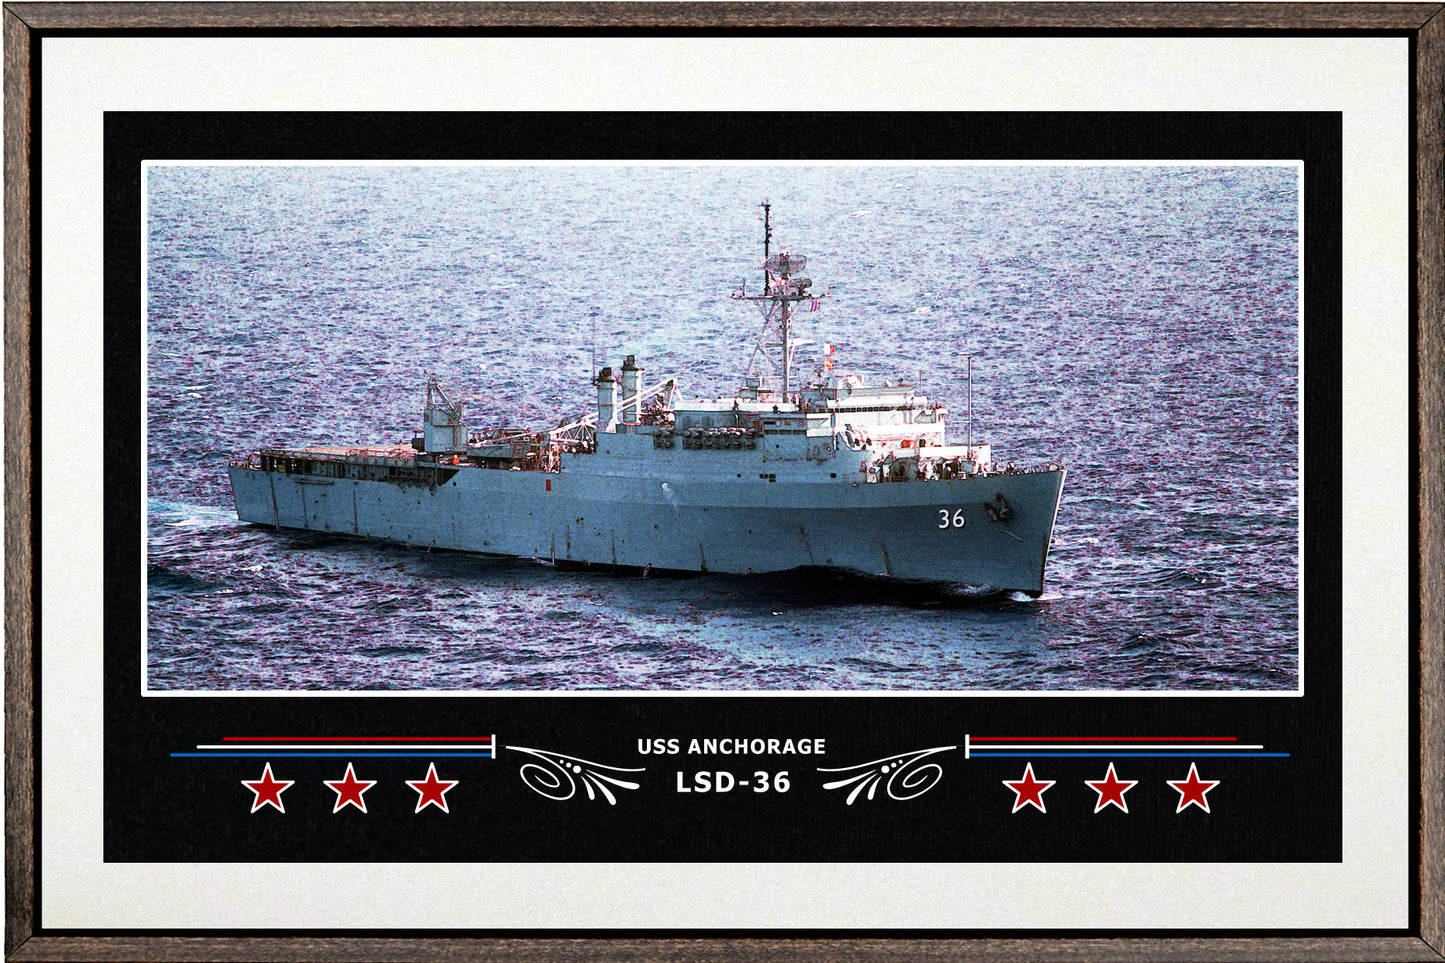 USS ANCHORAGE LSD 36 BOX FRAMED CANVAS ART WHITE